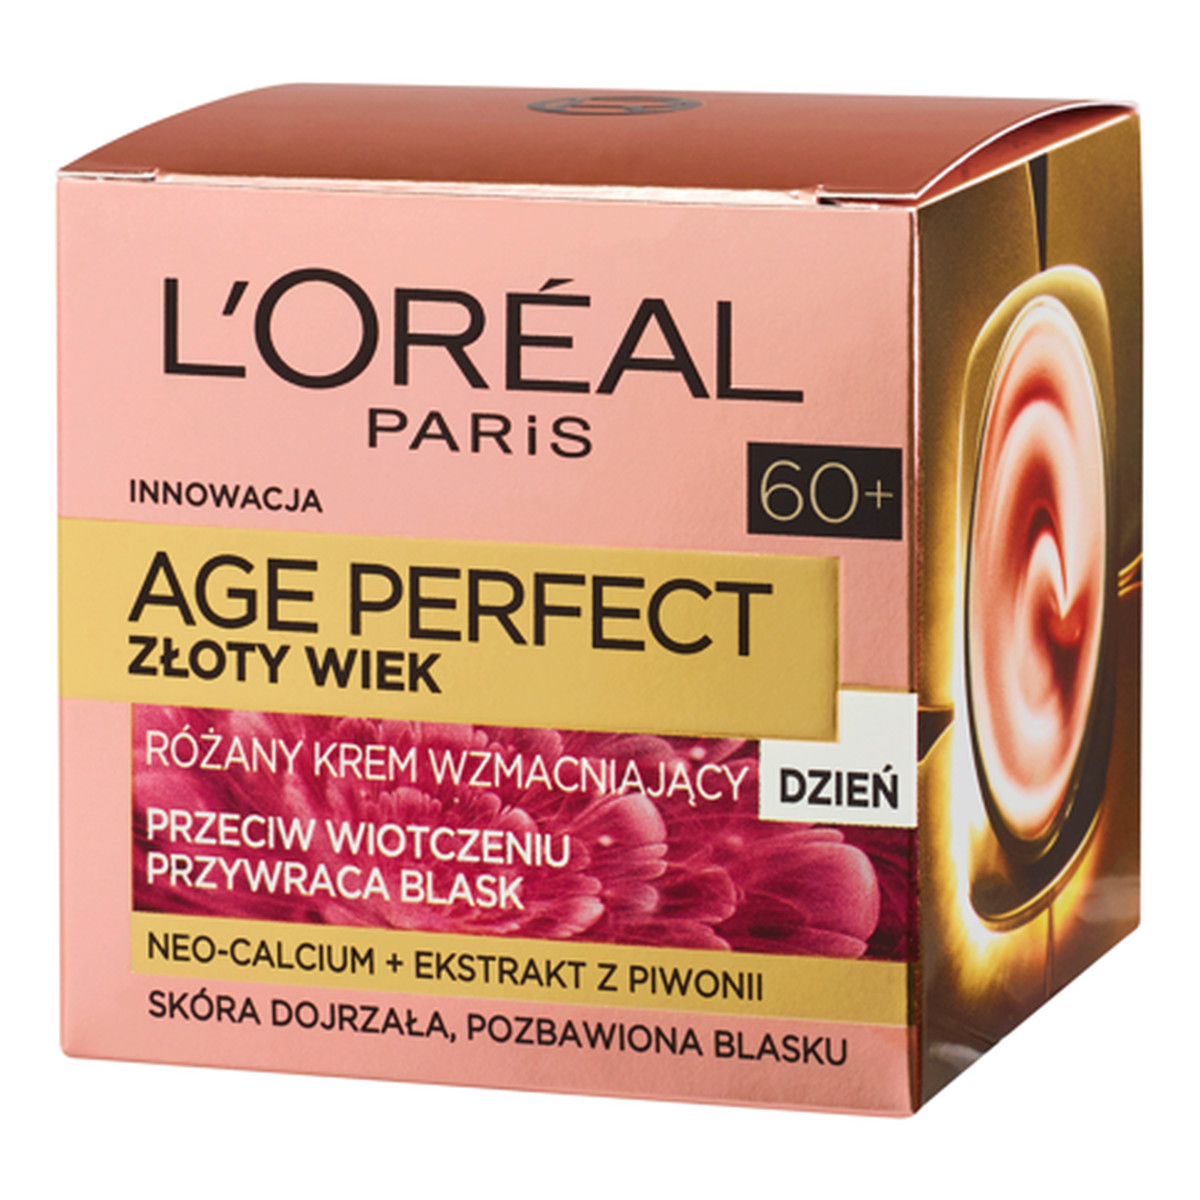 L`oreal Age Perfect Neo-Calcium Cream Różany krem wzmacniający na dzień 50ml